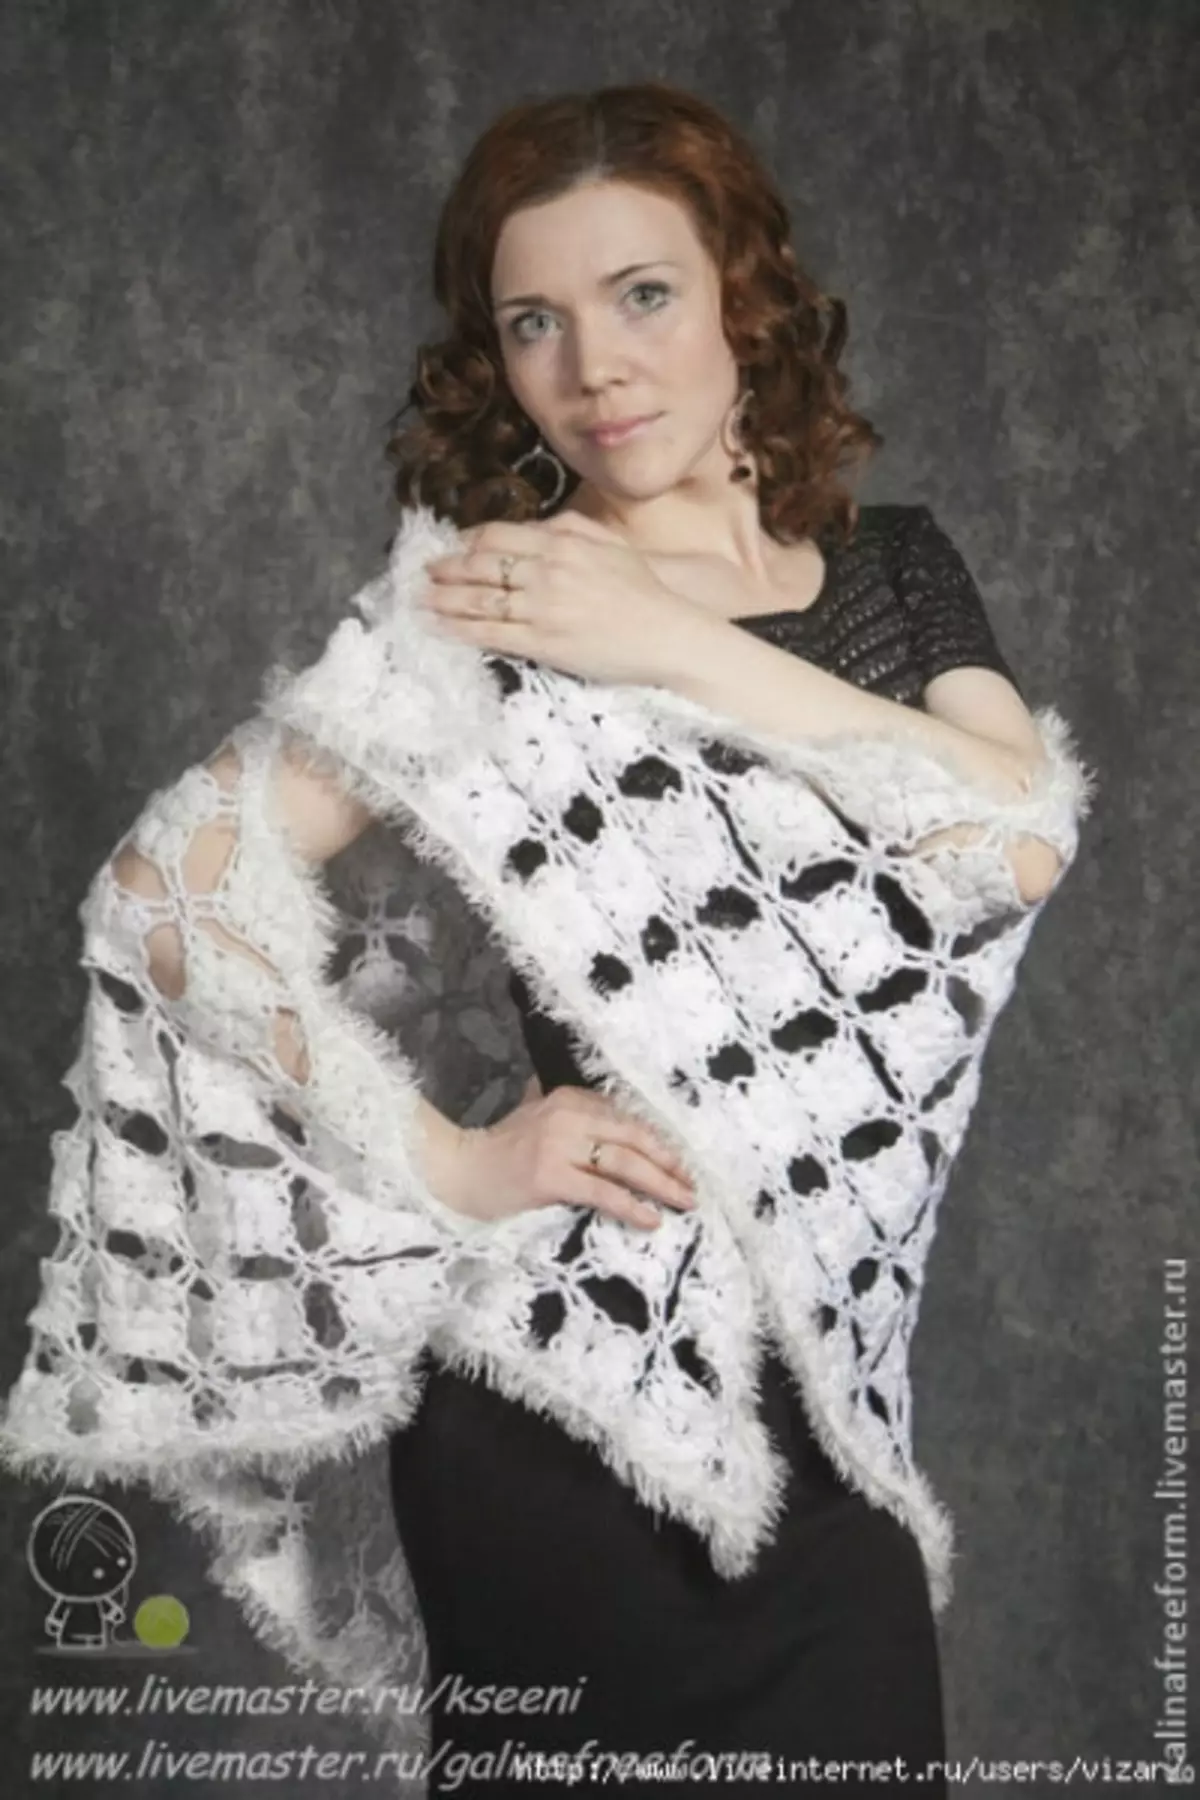 ব্রাশের সাথে সাদা crochet শাল: ভিডিও পাঠের সাথে চিত্র এবং বর্ণনা